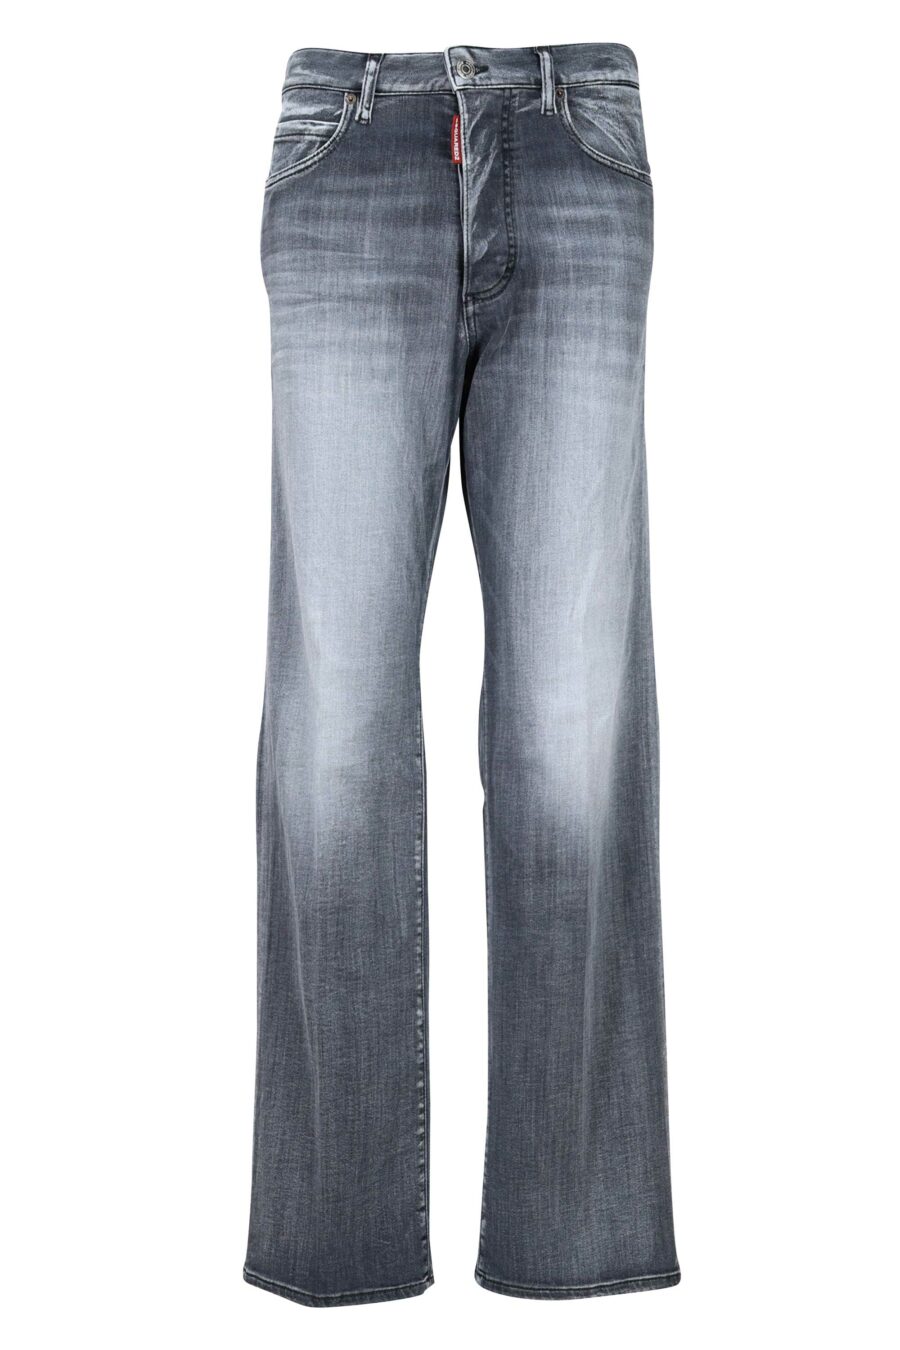 Pantalon en denim "San Diego jean" noir porté - 8054148230845